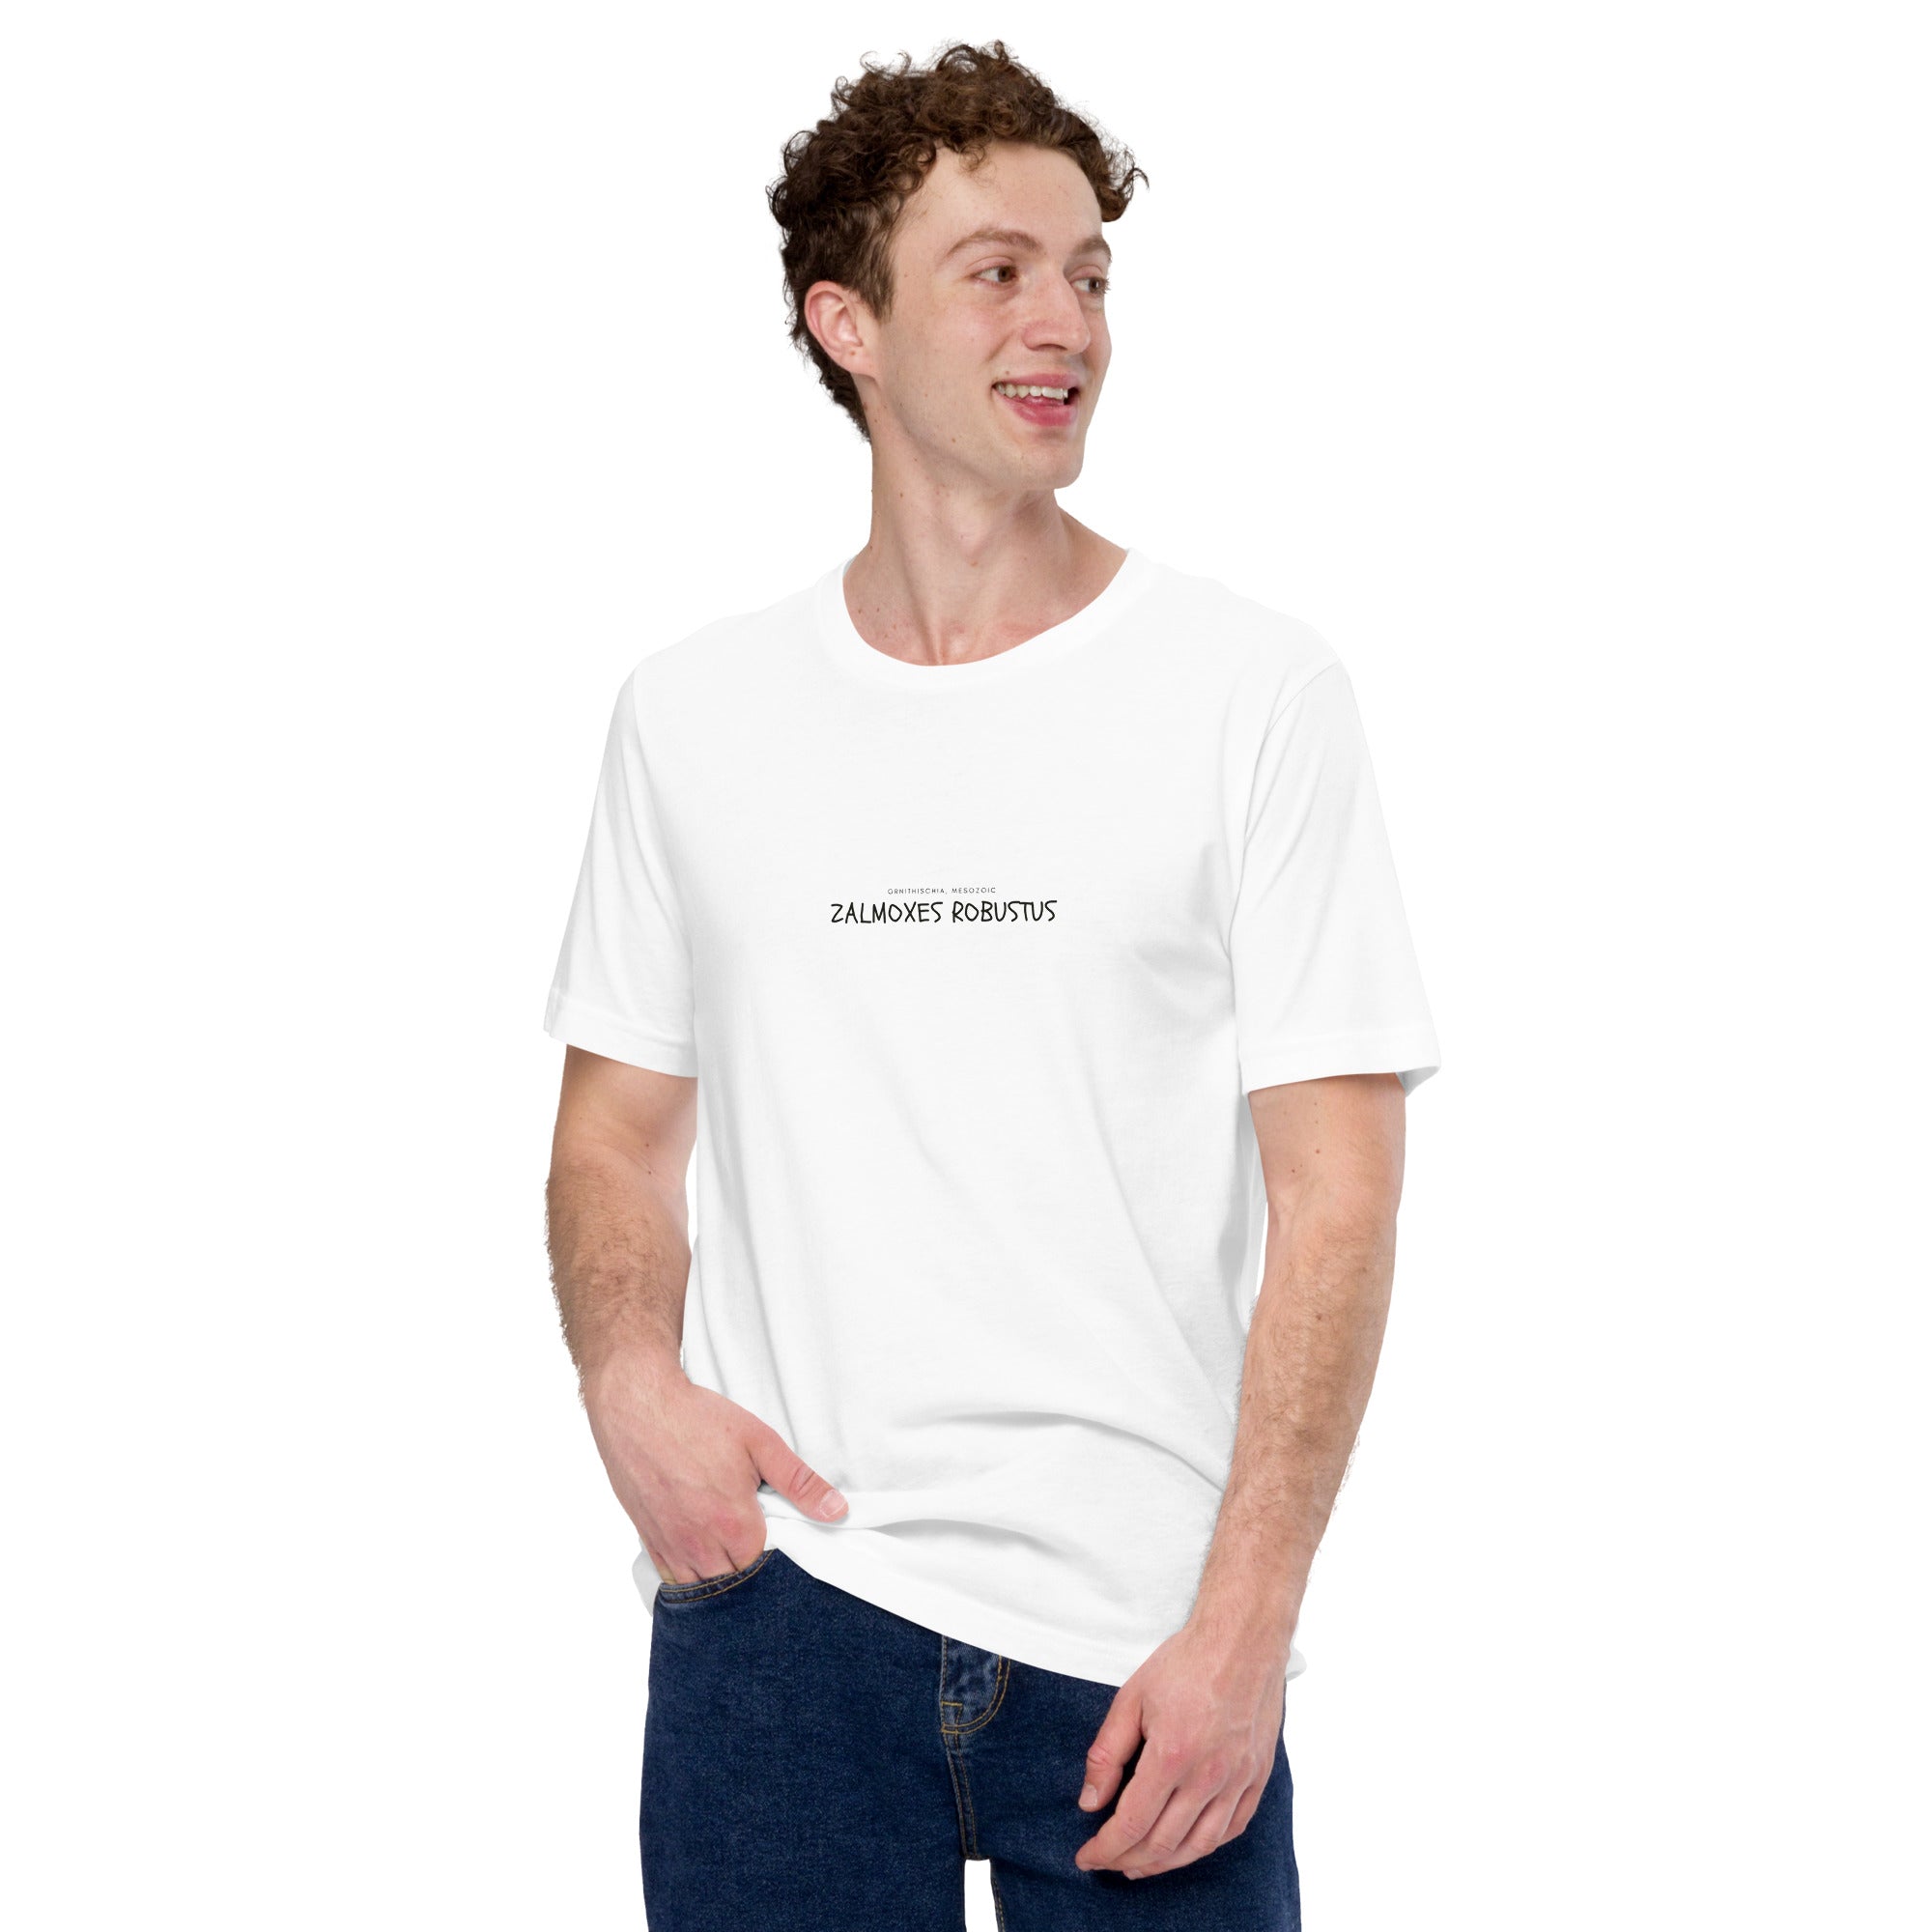 Camiseta unisex con texto "Zalmoxes robustus"